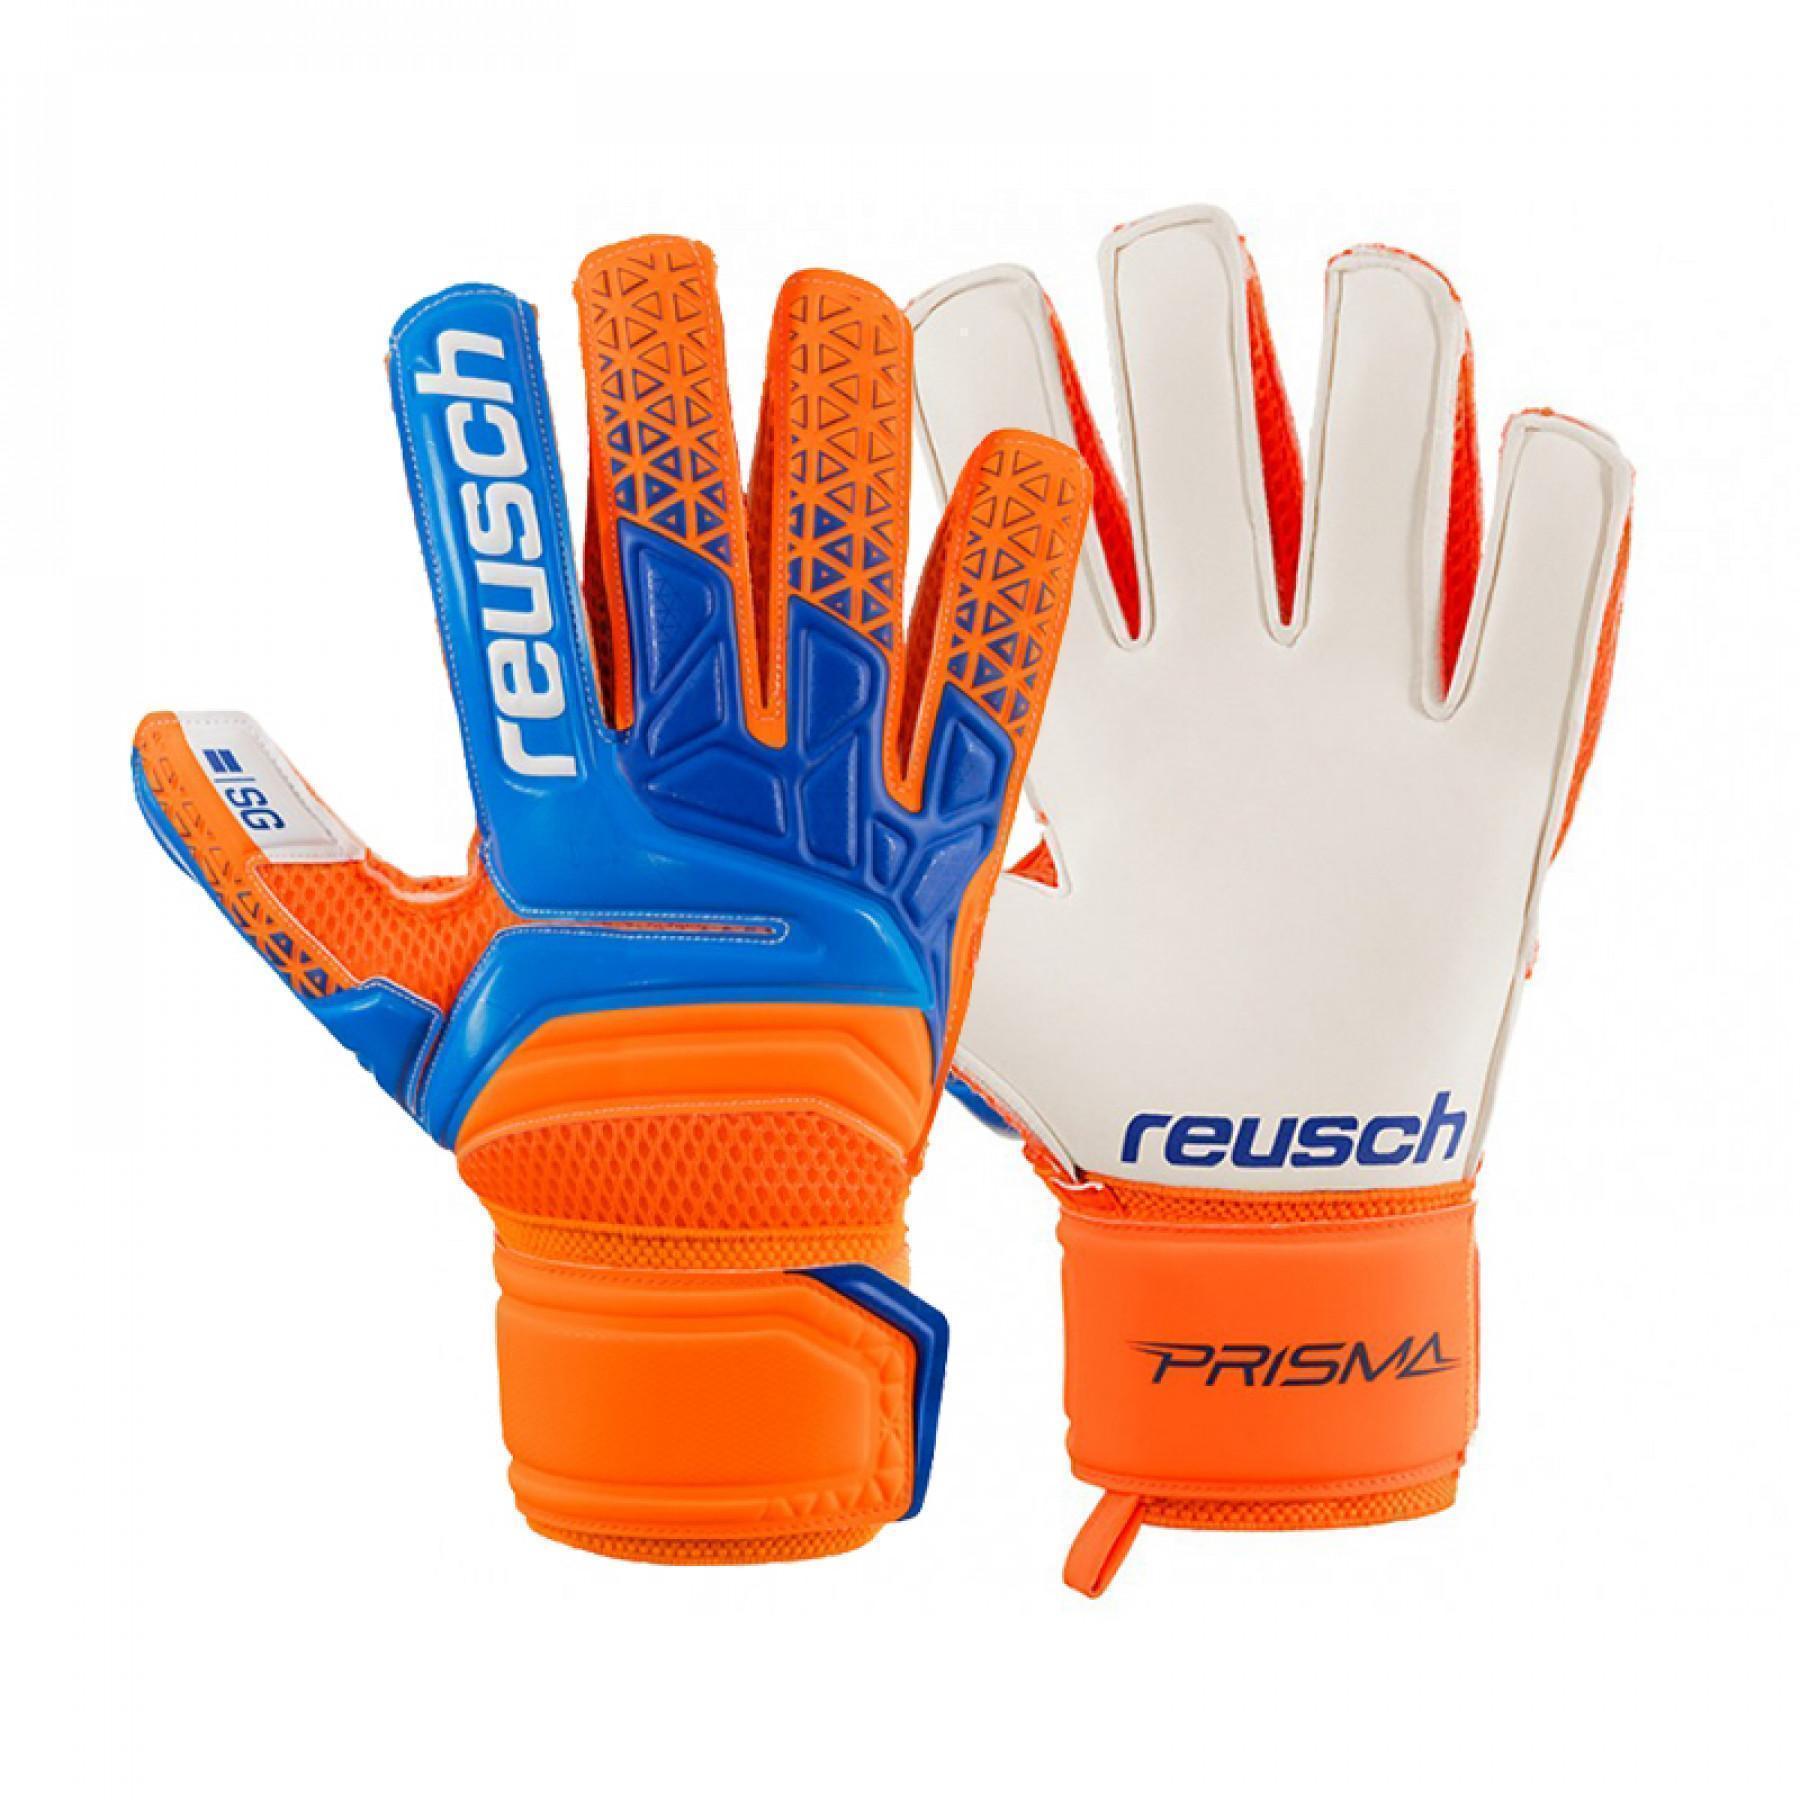 Goalkeeper gloves Reusch Prisma SG